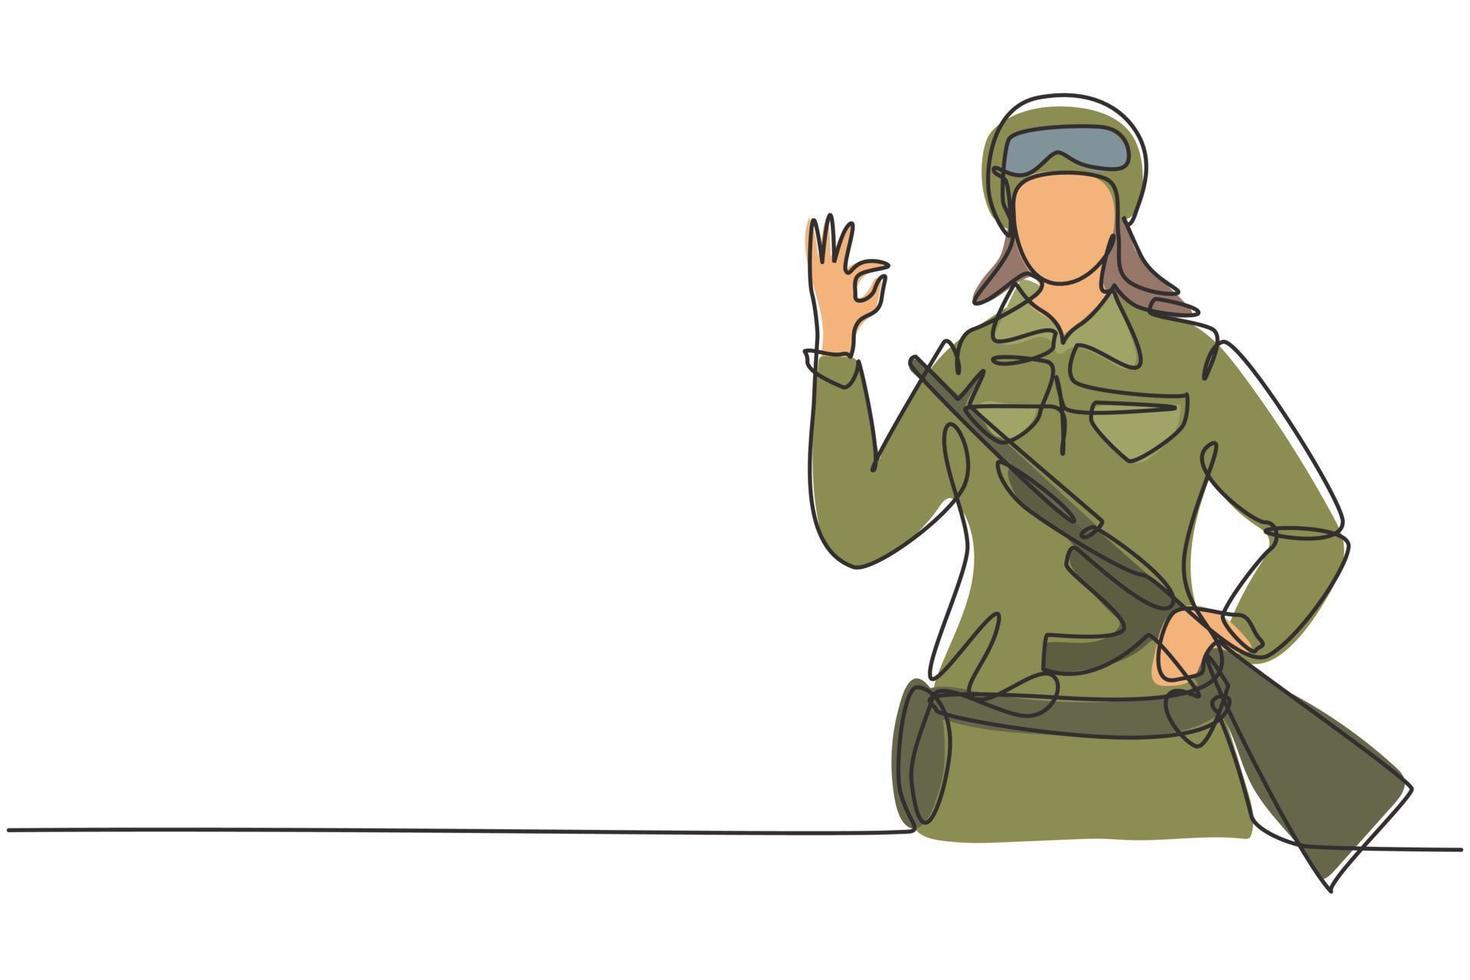 enkele doorlopende lijntekening vrouwelijke soldaten met wapen, uniform, gebaar oke is klaar om het land op het slagveld te verdedigen tegen de vijand. dynamische één lijn trekken grafisch ontwerp vectorillustratie vector